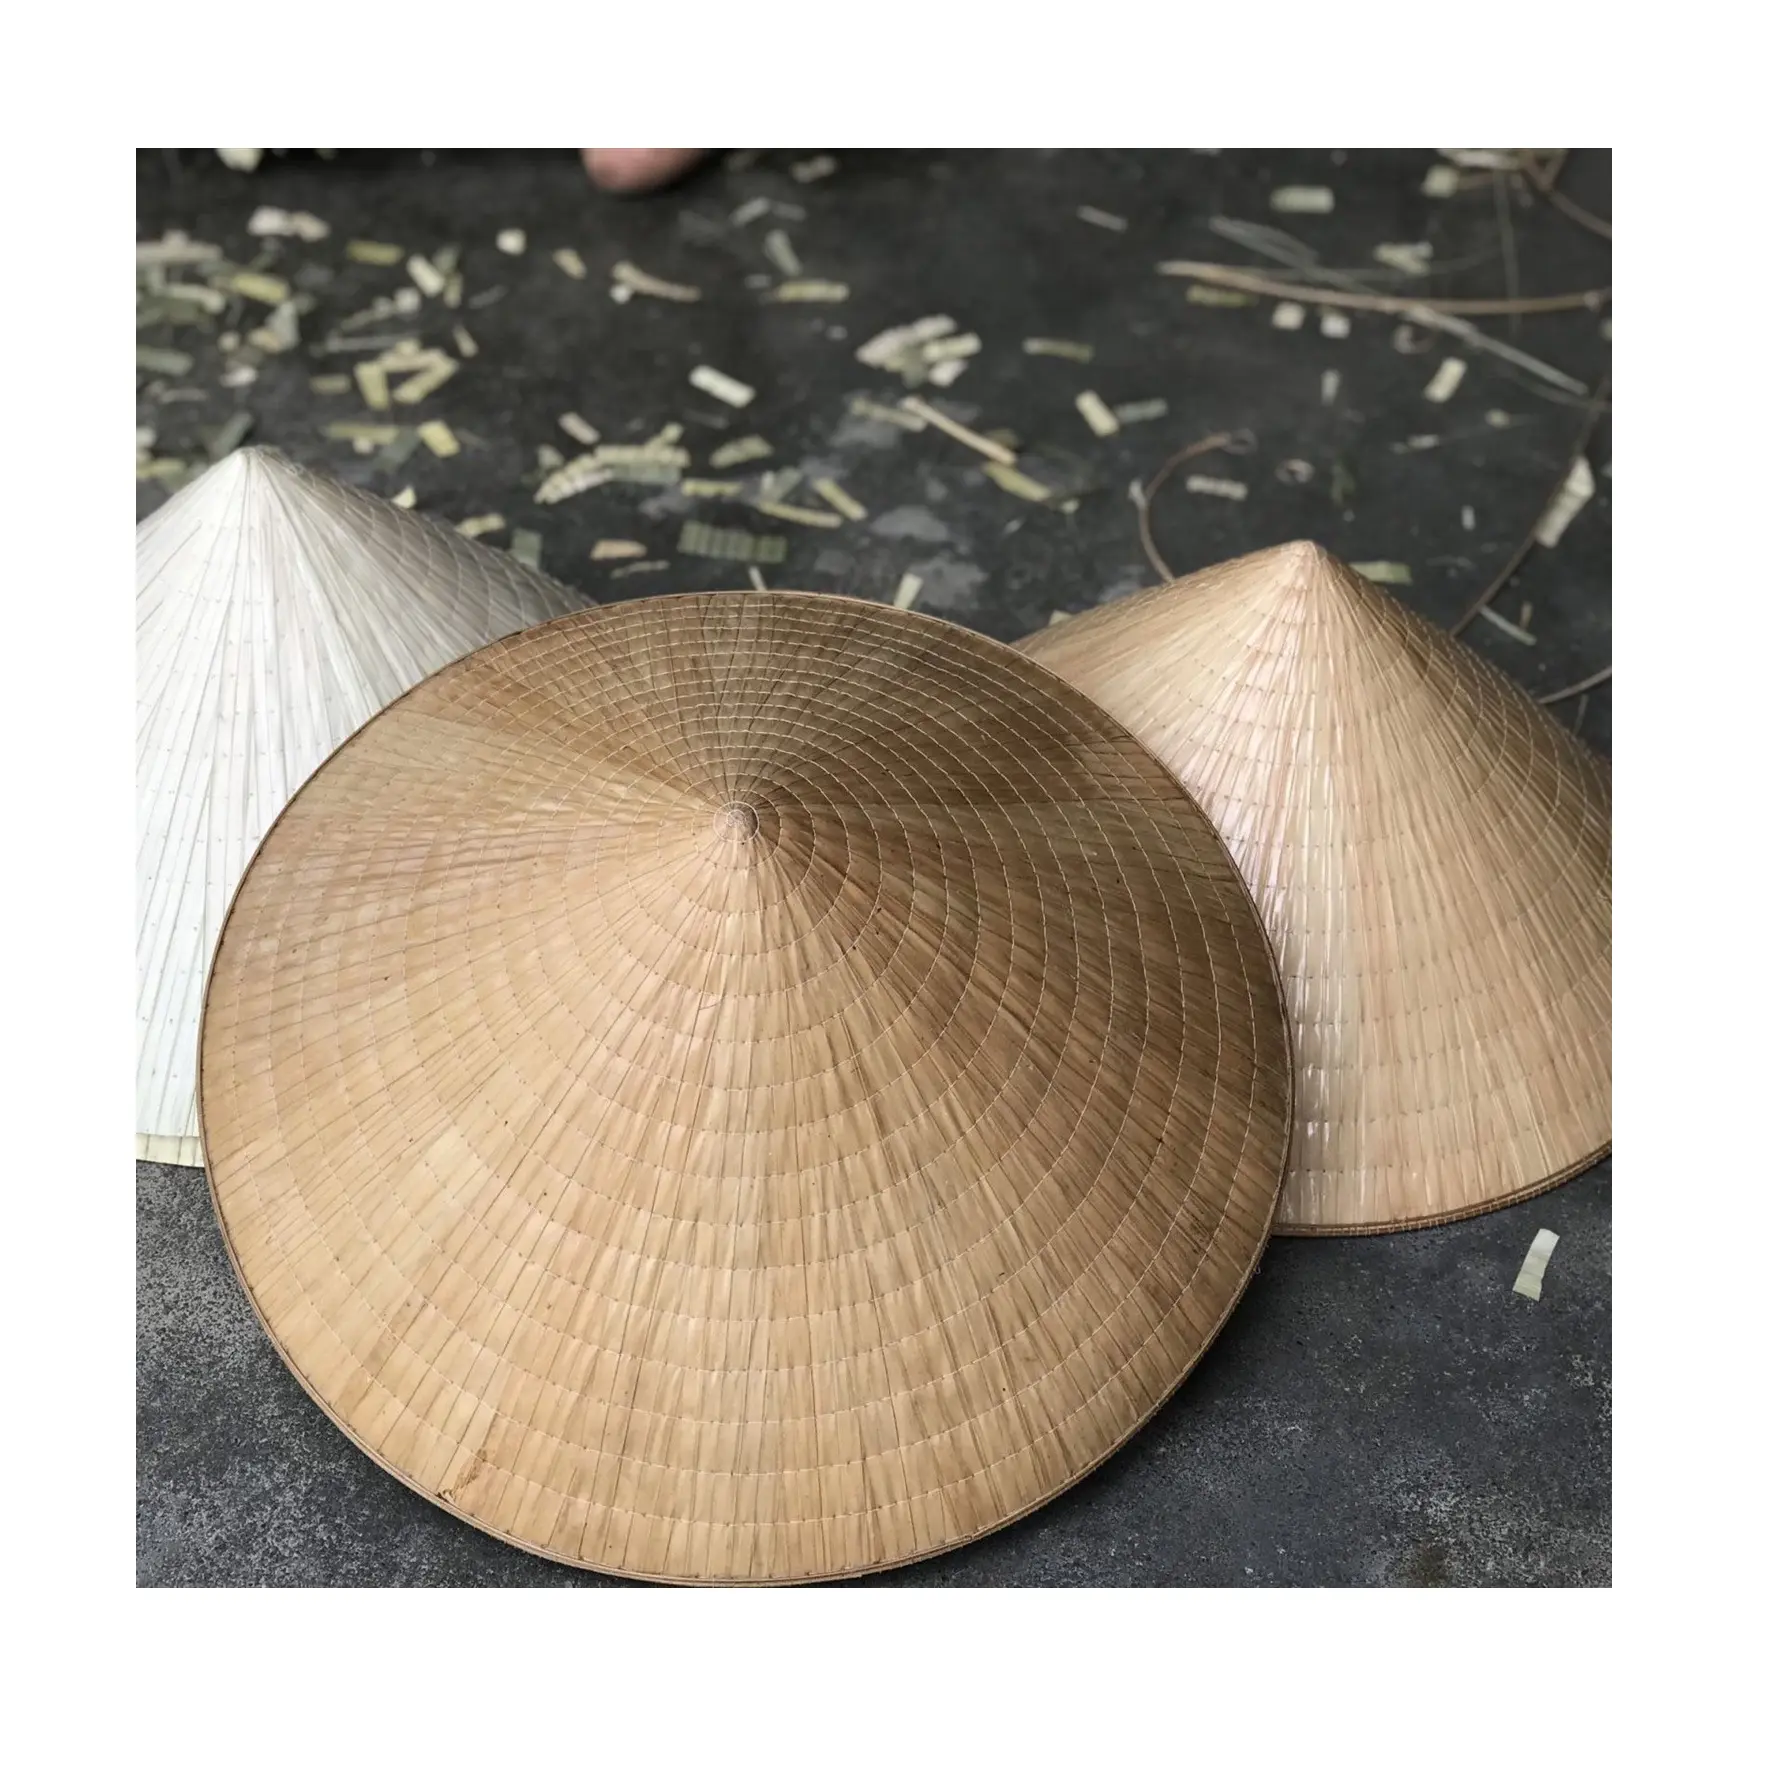 الفيتنامية متنوعة نمط قبعة من القش الخيزران أوراق النخيل المخروطية التقليدية قبعة للبيع